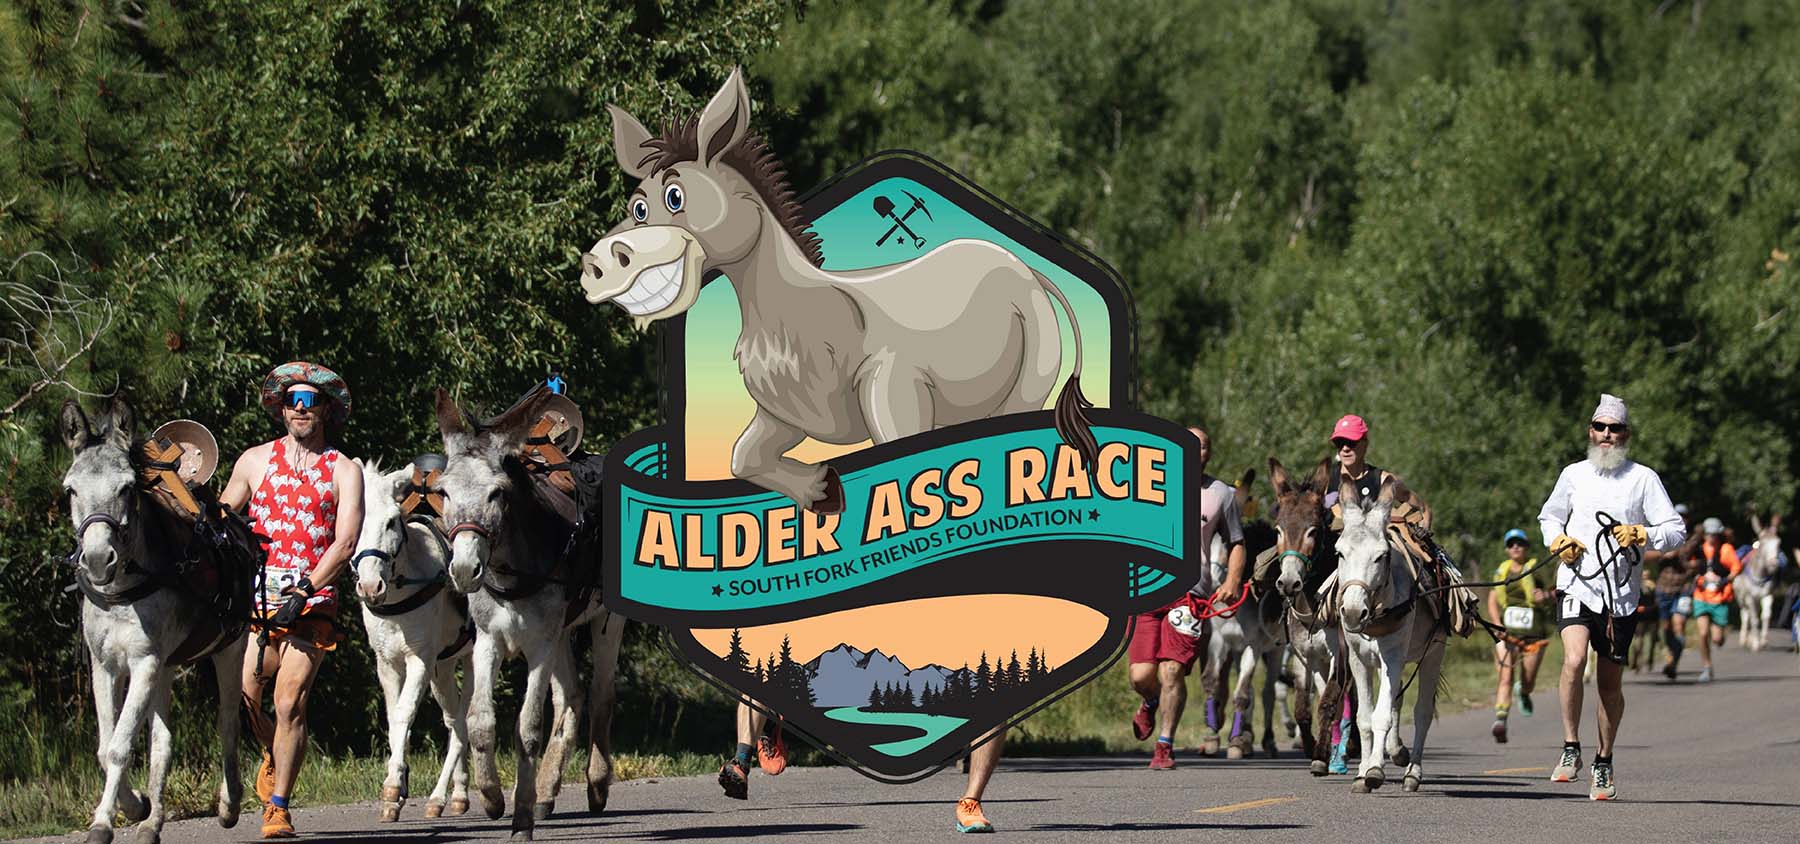 Alder Ass Race